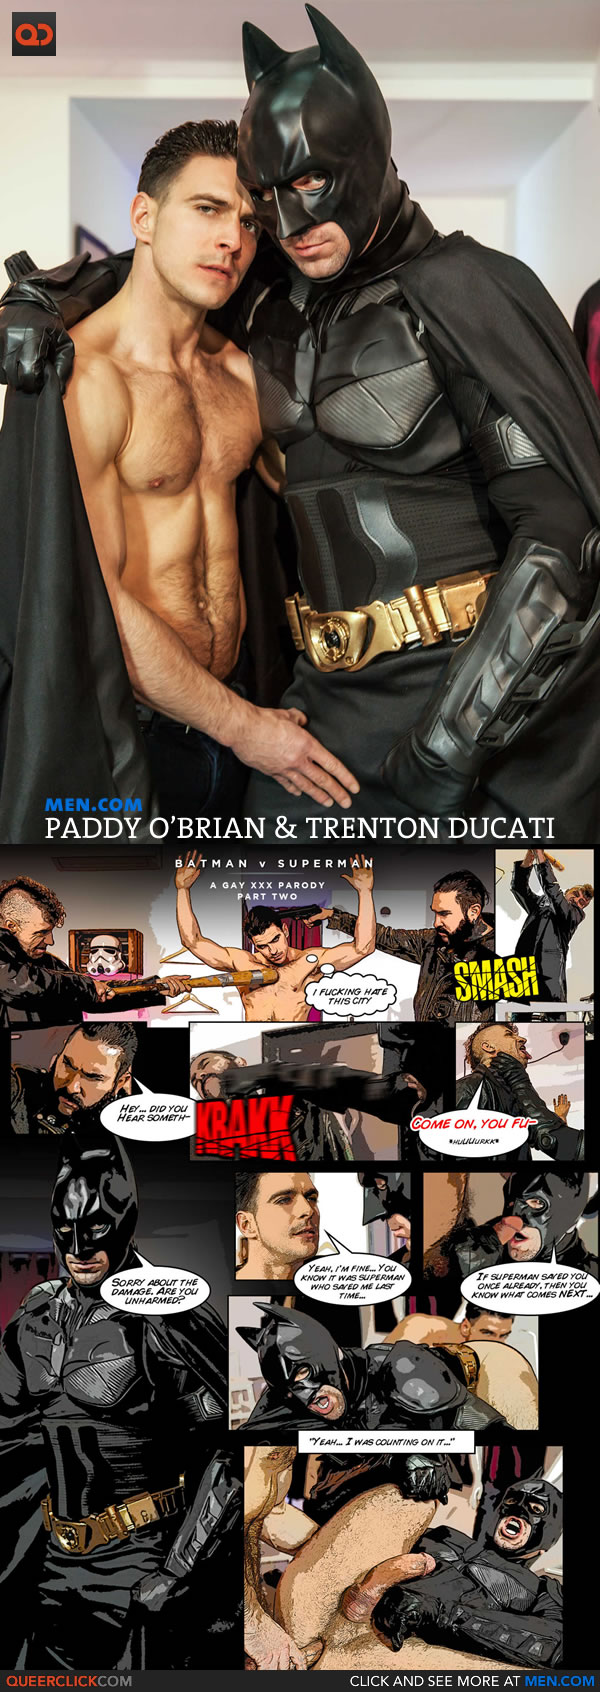 600px x 1692px - Men.com: Batman V Superman - A Gay XXX Parody Part 2 with Paddy O'Brian &  Trenton Ducati - QueerClick